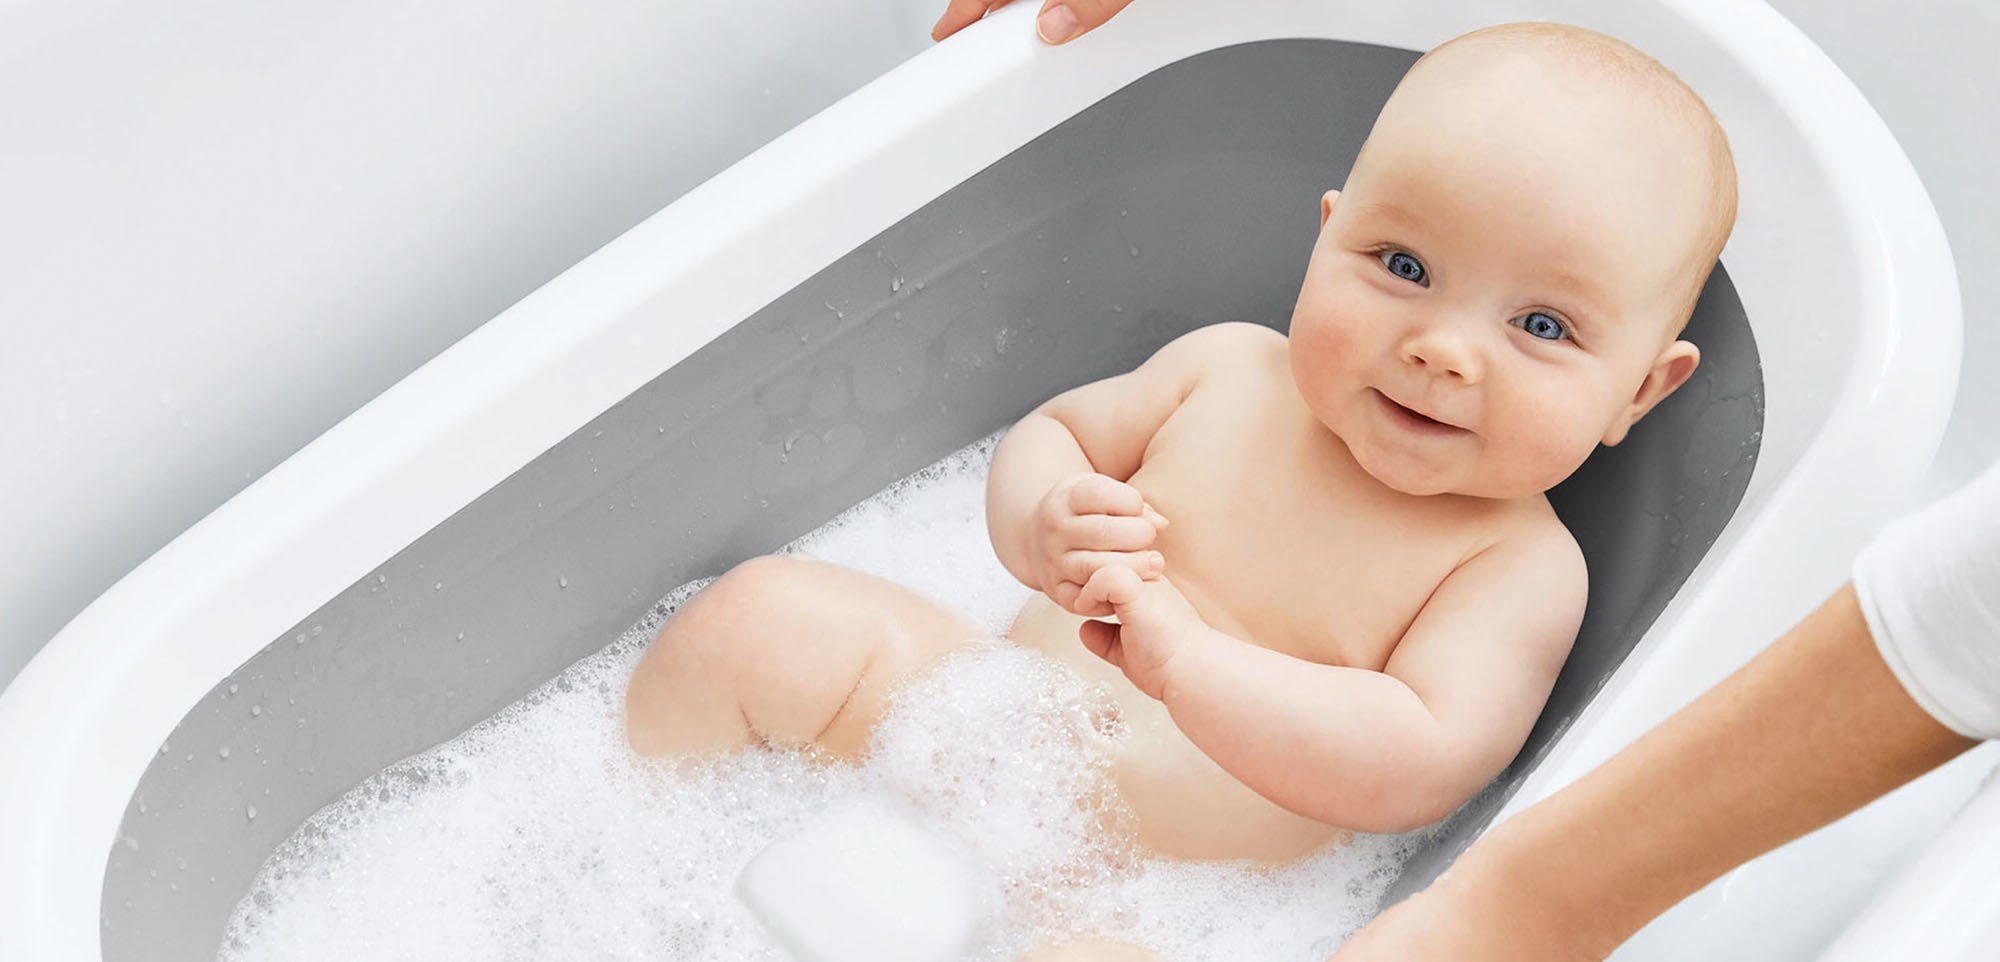 Schotel verwennen typist 5 tips voor een baby die niet graag in bad gaat - Babymatters